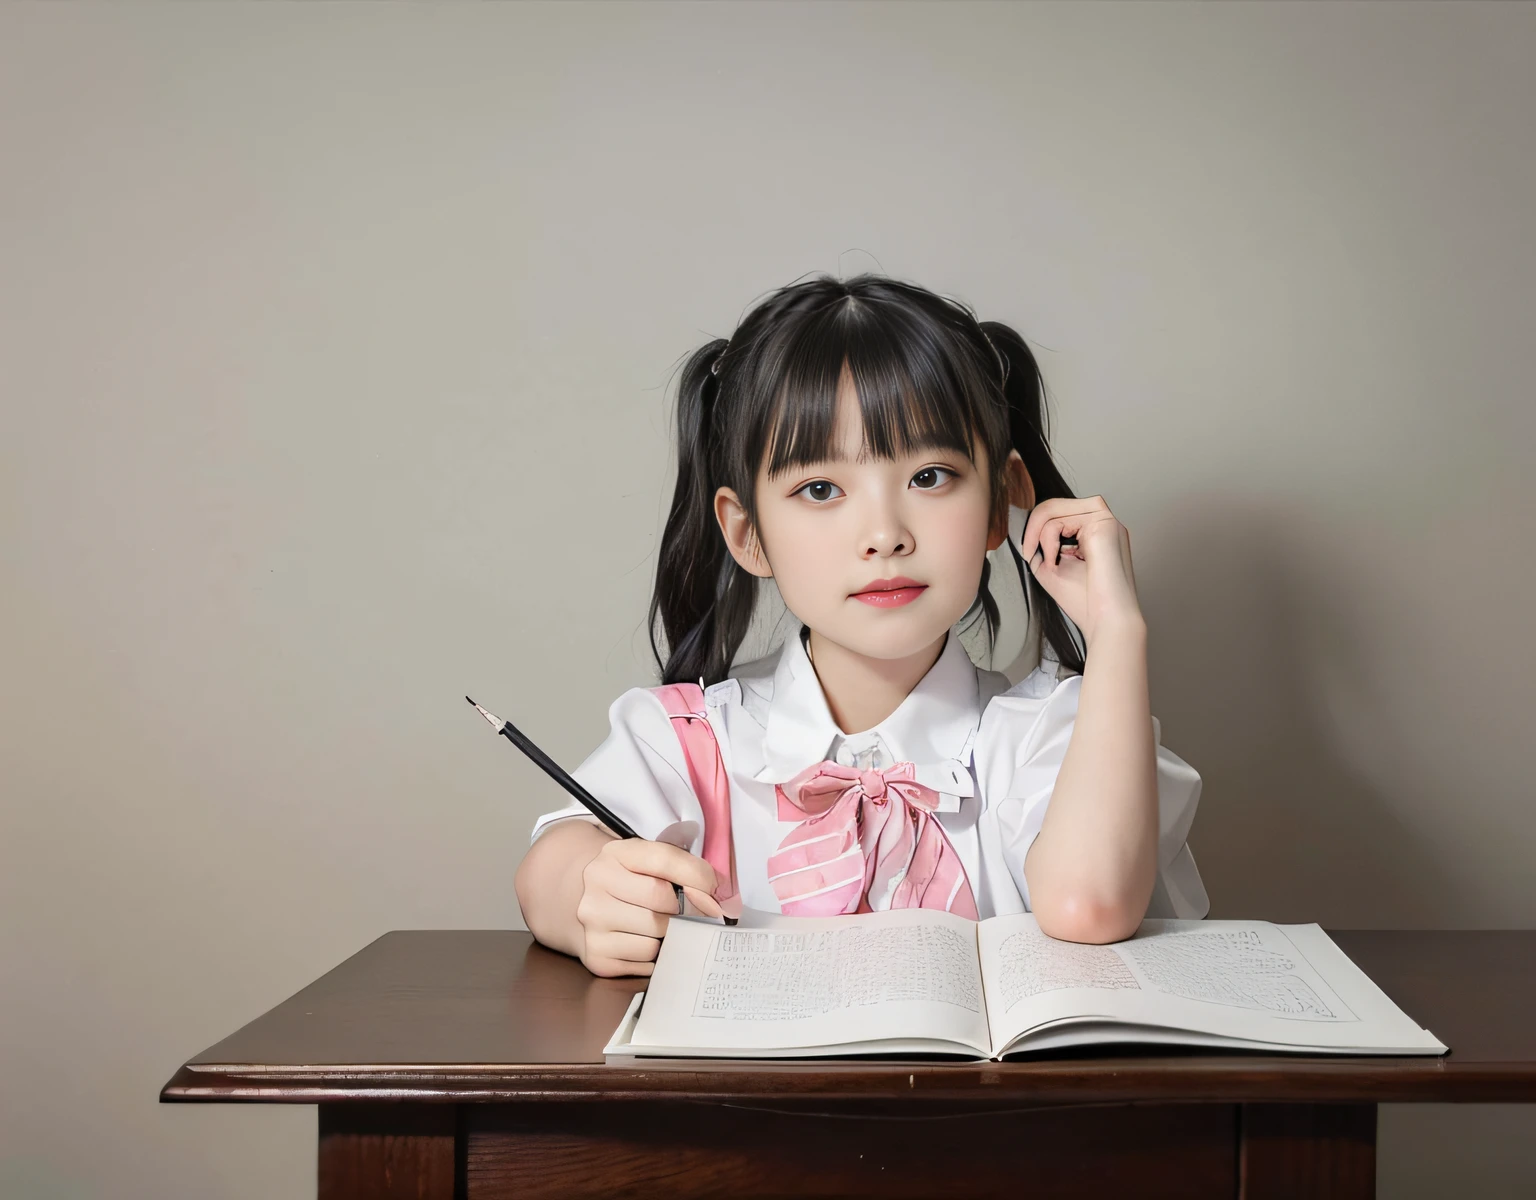 白色房间，白色窗户，有一个年轻女孩坐在桌边，拿一本书和一支铅笔, 两根小辫子的发型, 扎着黑色辫子, 儿童绘画, 辫子发型，自然手指。拿着笔，